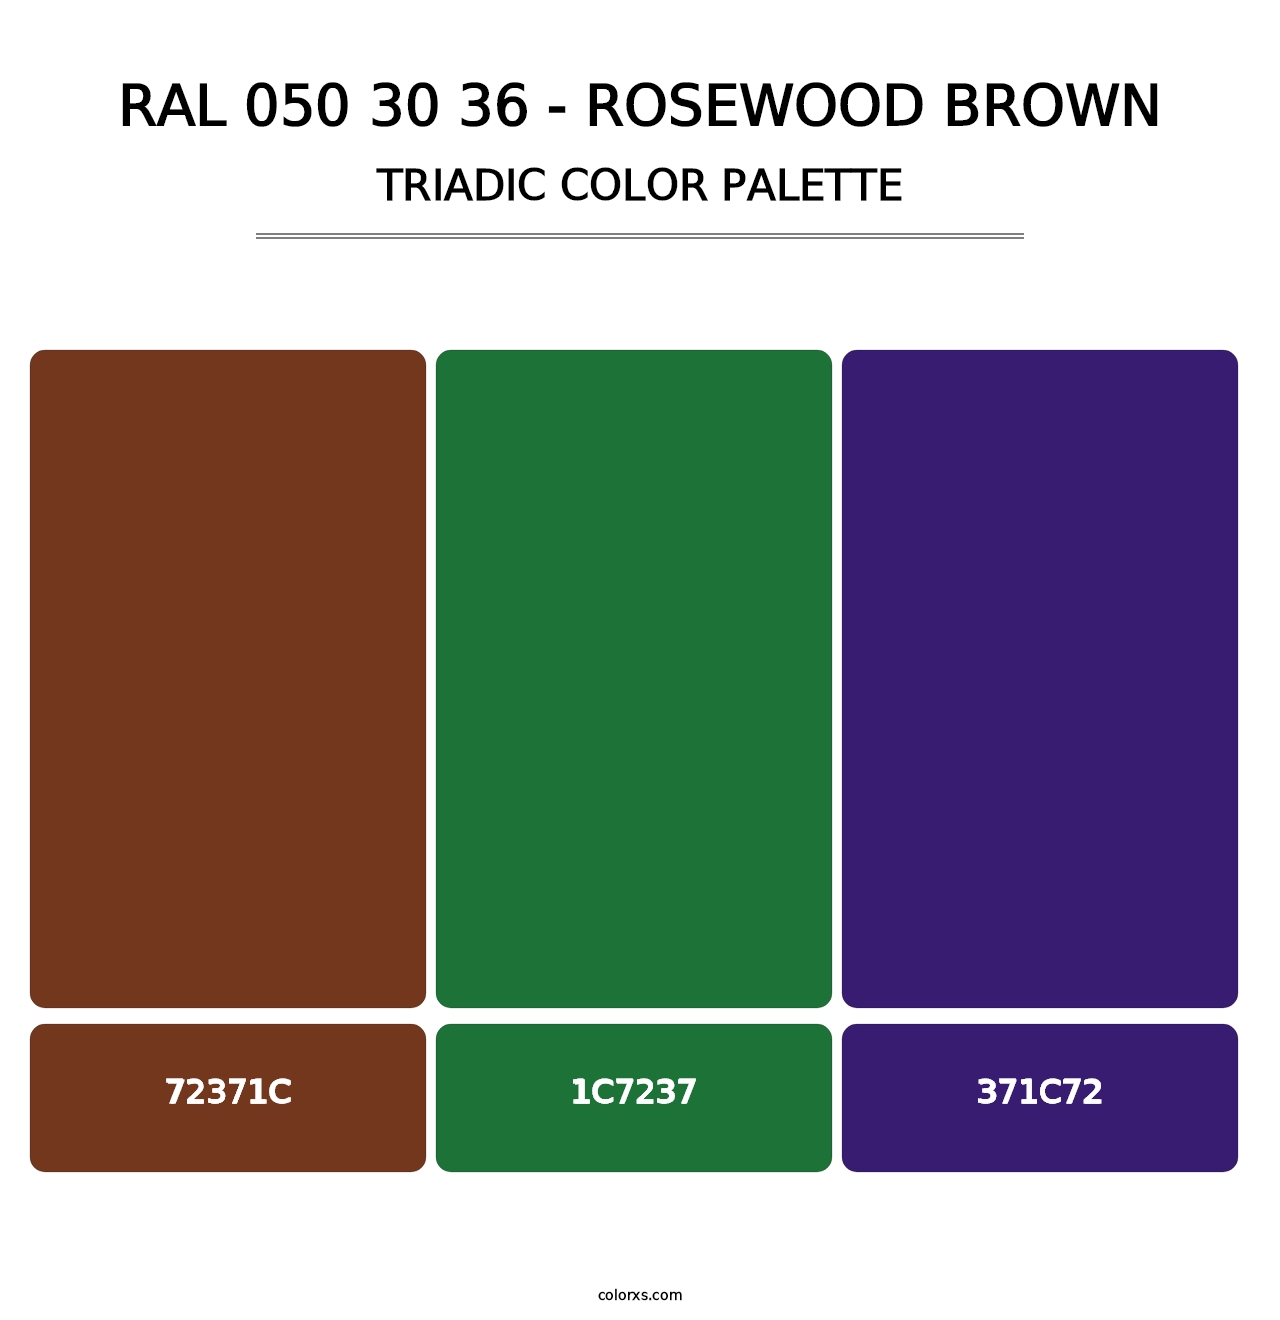 RAL 050 30 36 - Rosewood Brown - Triadic Color Palette